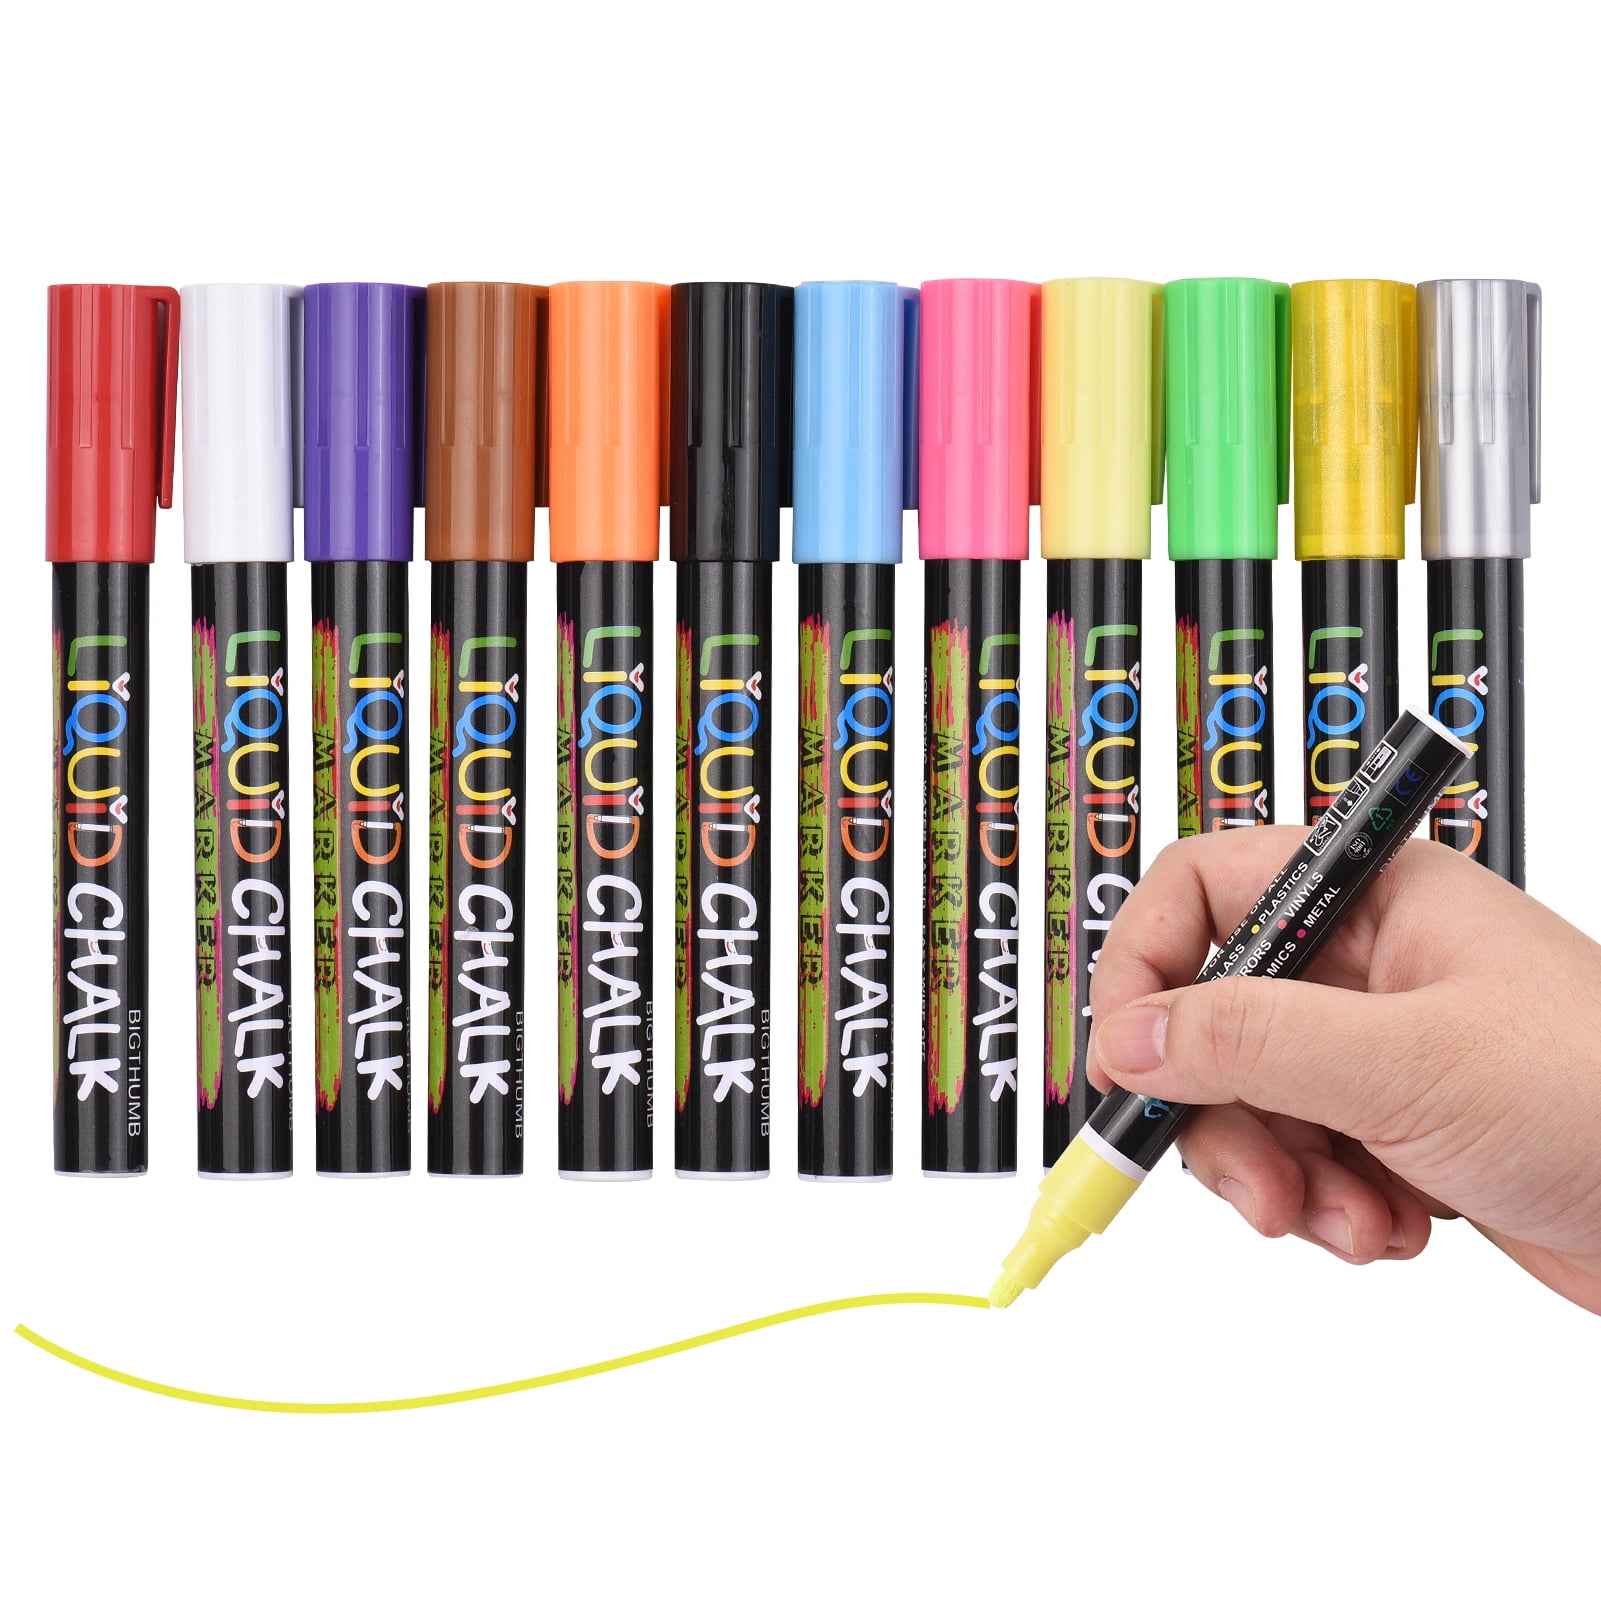 Liquid Chalk Markers for Blackboards (10 Neon Colors) - Chalkboard